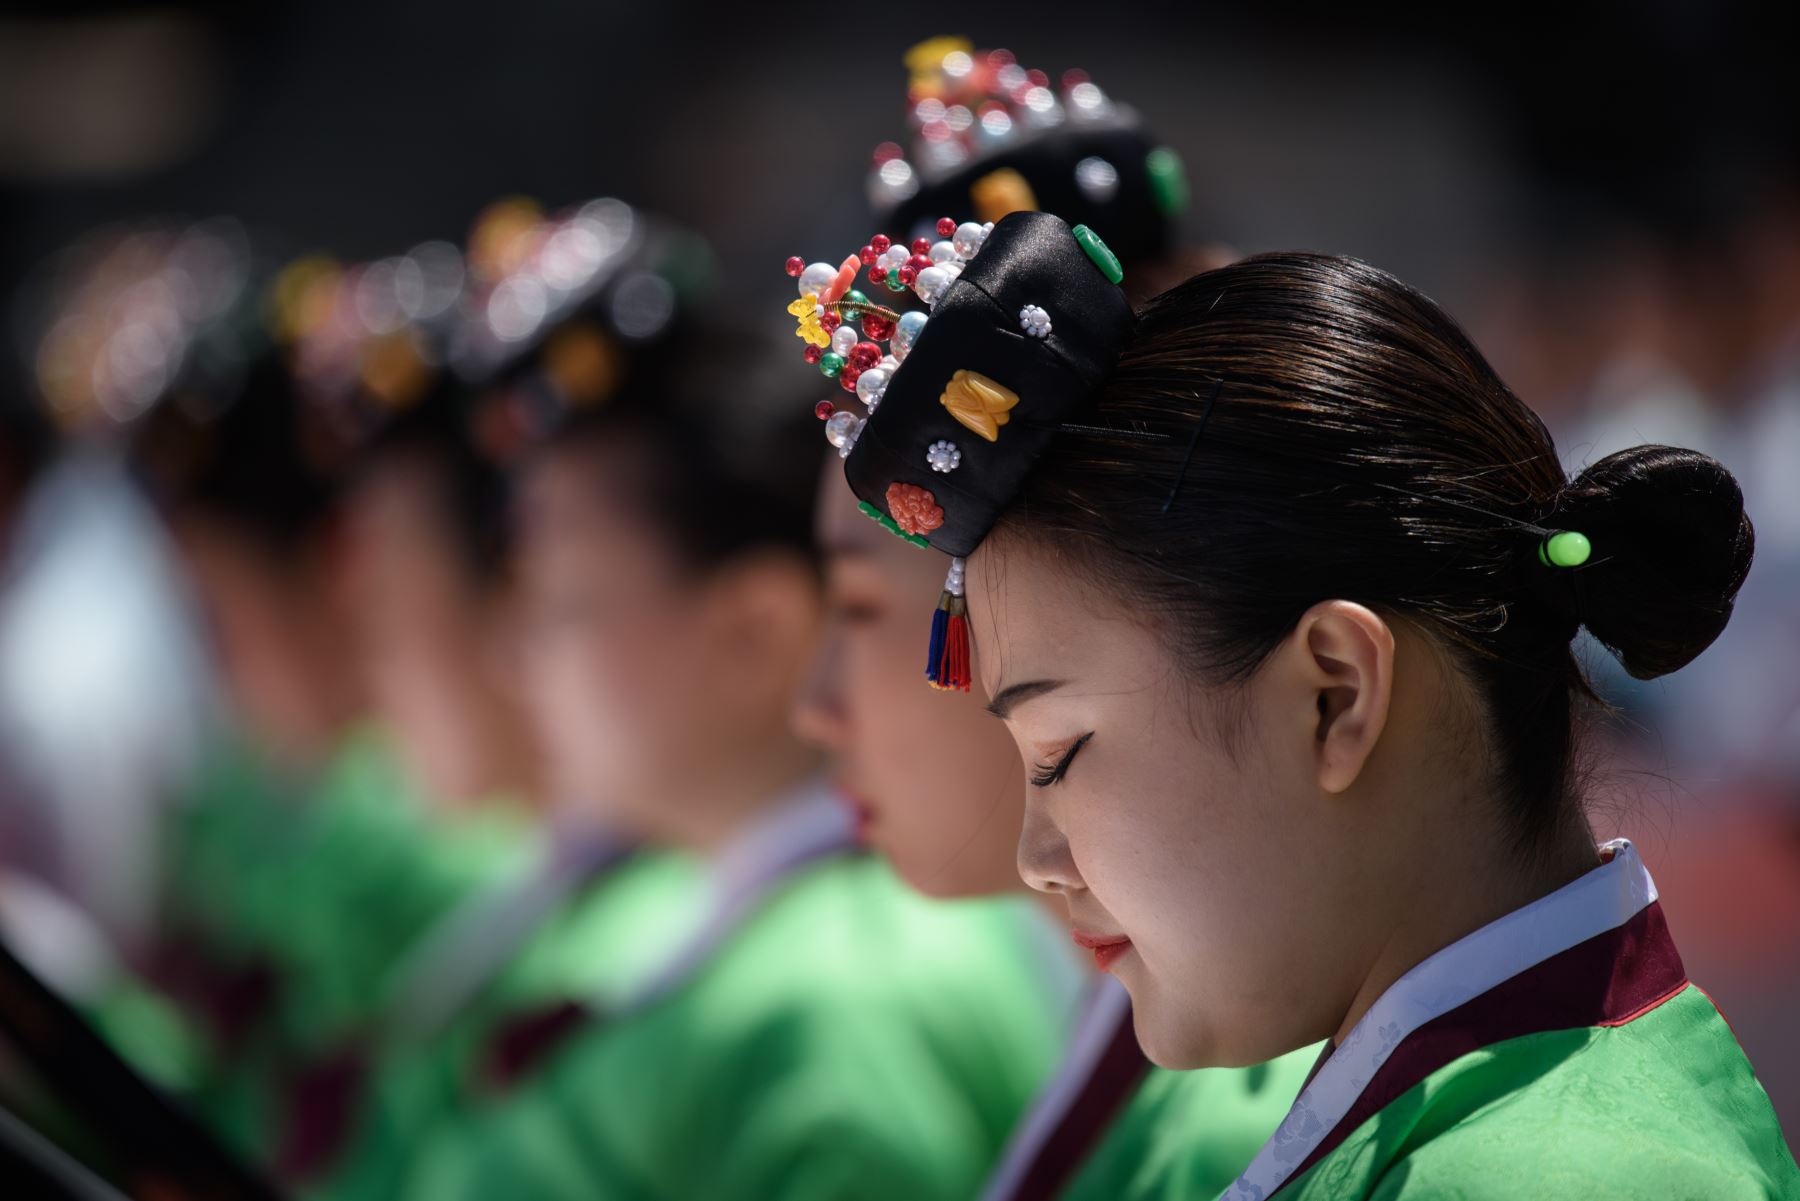 Mujeres surcoreanas de 20 años participan de la tradicional ceremonia por la llegada a la mayoría de edad, realizada en el Palacio de Gyeonghui, Corea del Sur. La Mayoría de Edad se celebra el tercer lunes de Mayo. Foto: AFP